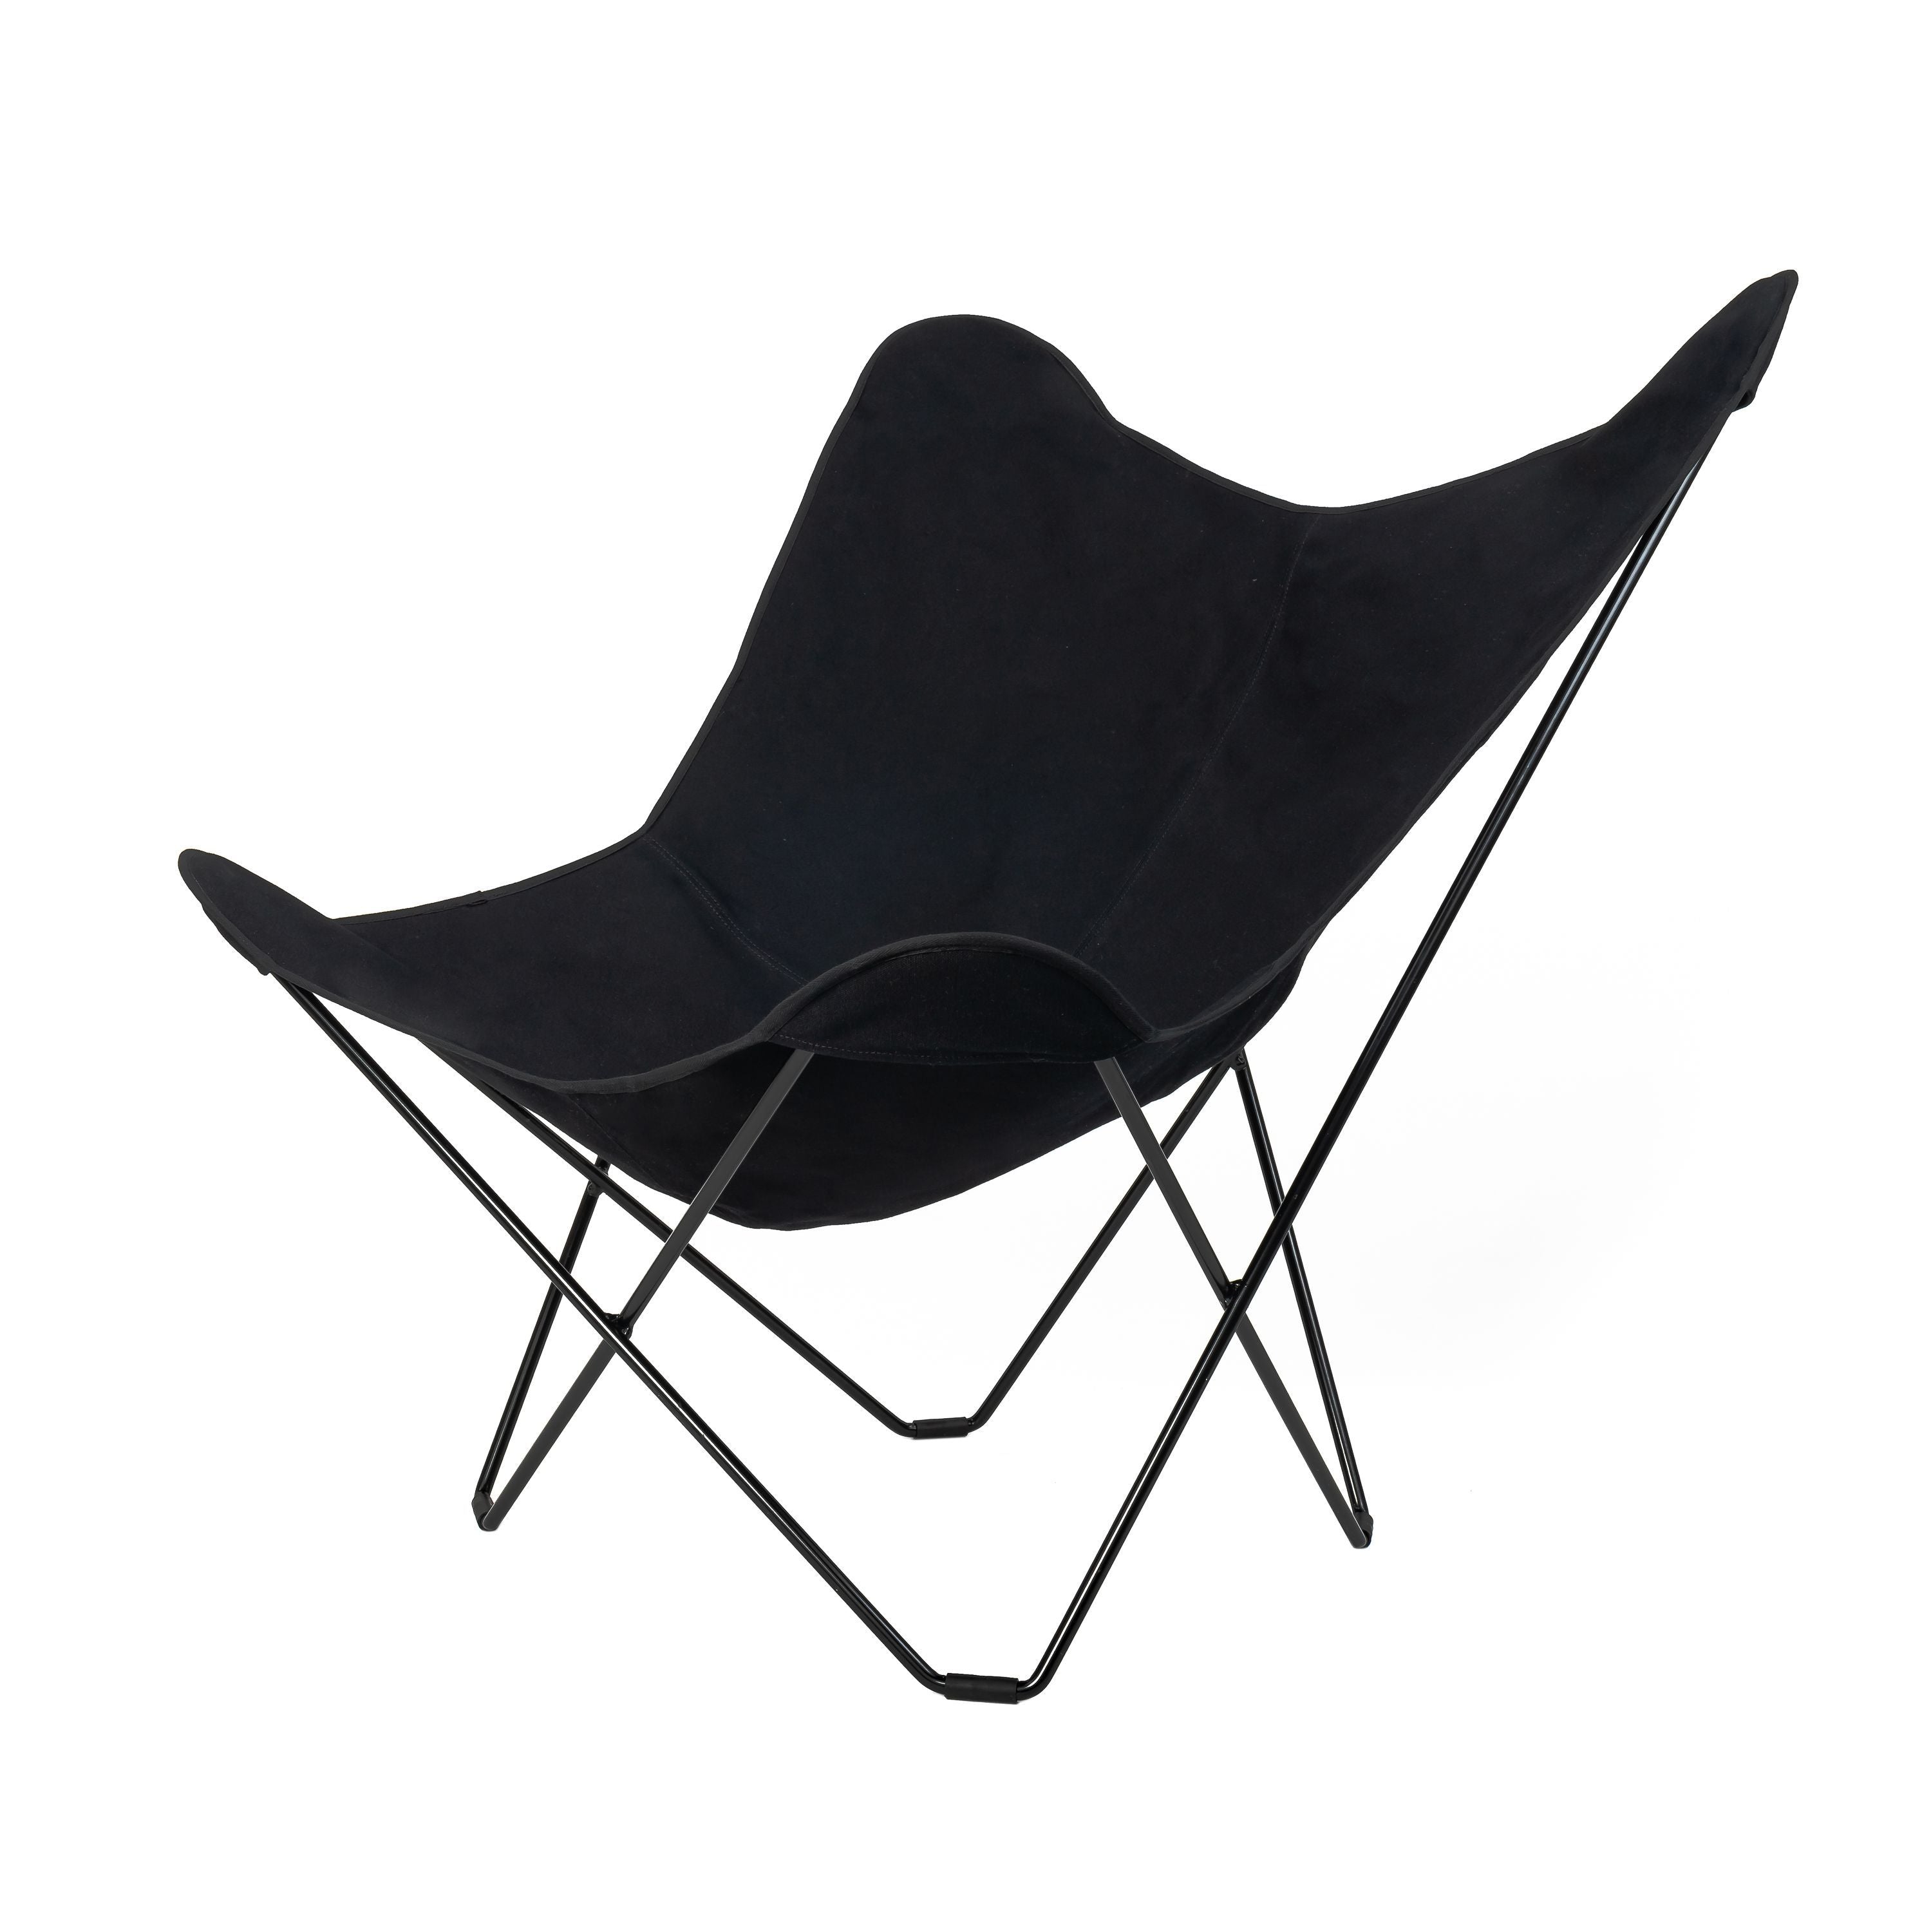 Cuero Cotton Canvas Mariposa Chair, Sort Med Sort Stel-Lænestole-Cuero-7340172612148-Cot-Can-Mar-Ind-Blk-BlkFr-CUE-Allbuy